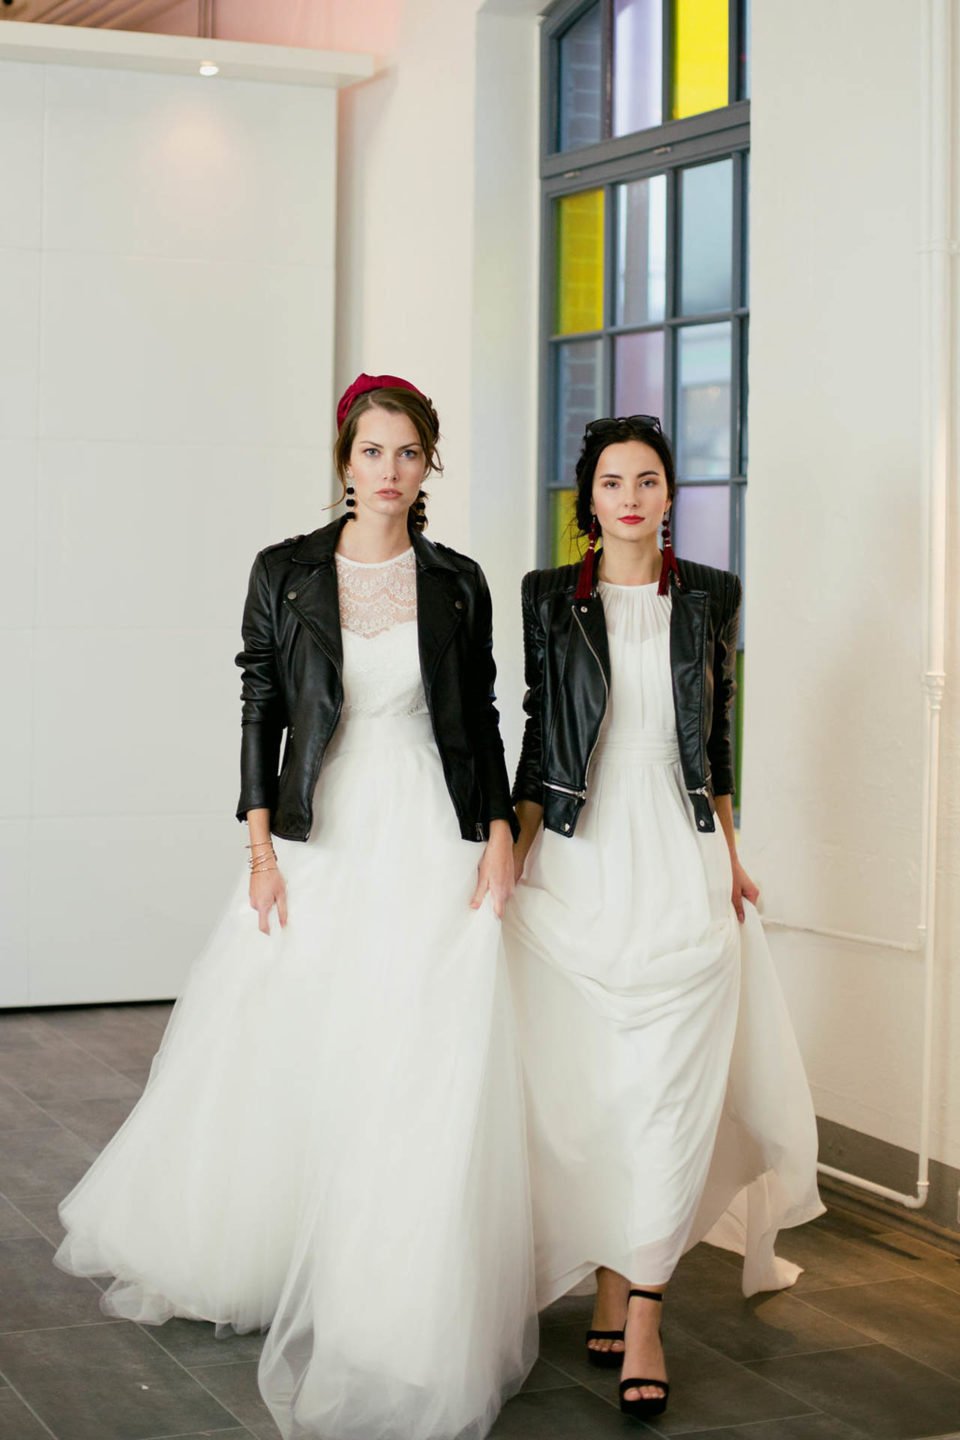 Brautkleider minimalistisch & cool 